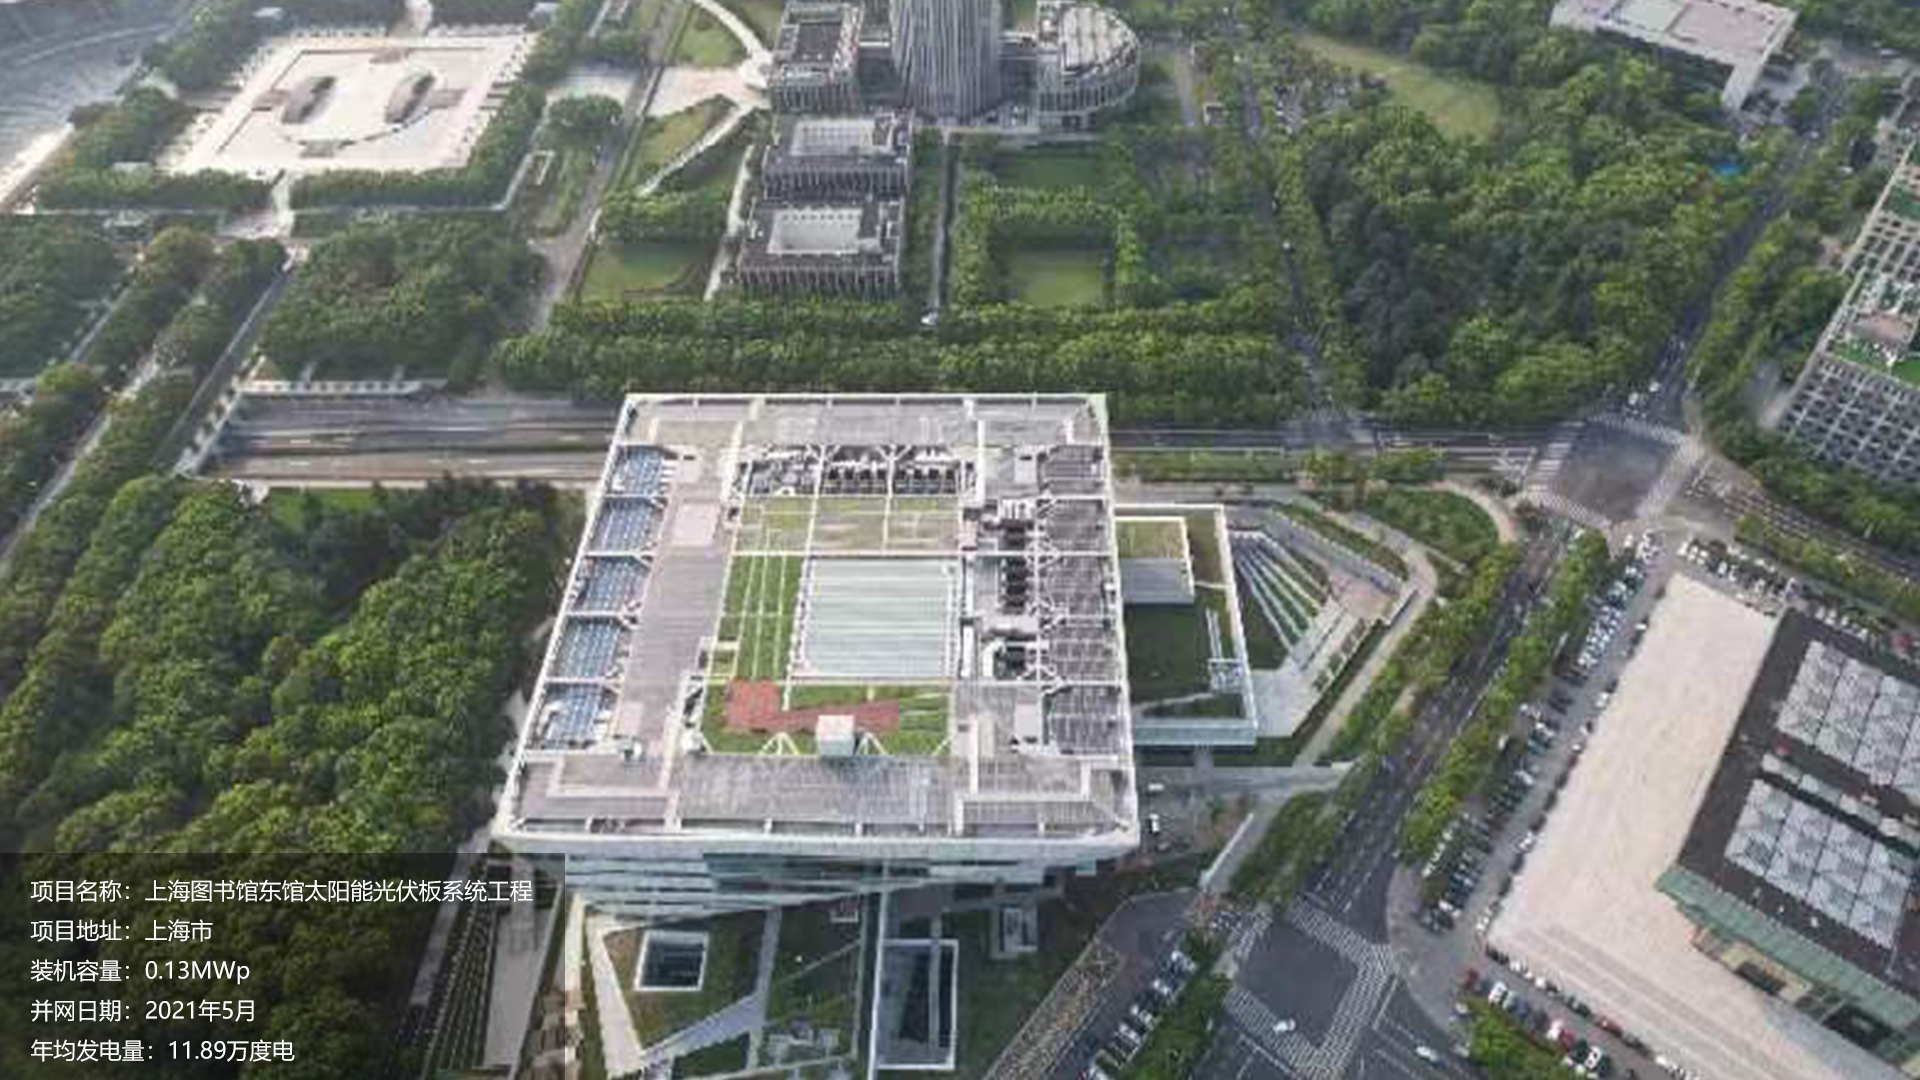 上海图书馆项目总装机容量0.13MW，项目位于上海市，于2021年5月并网发电，年均发电量约12万度。